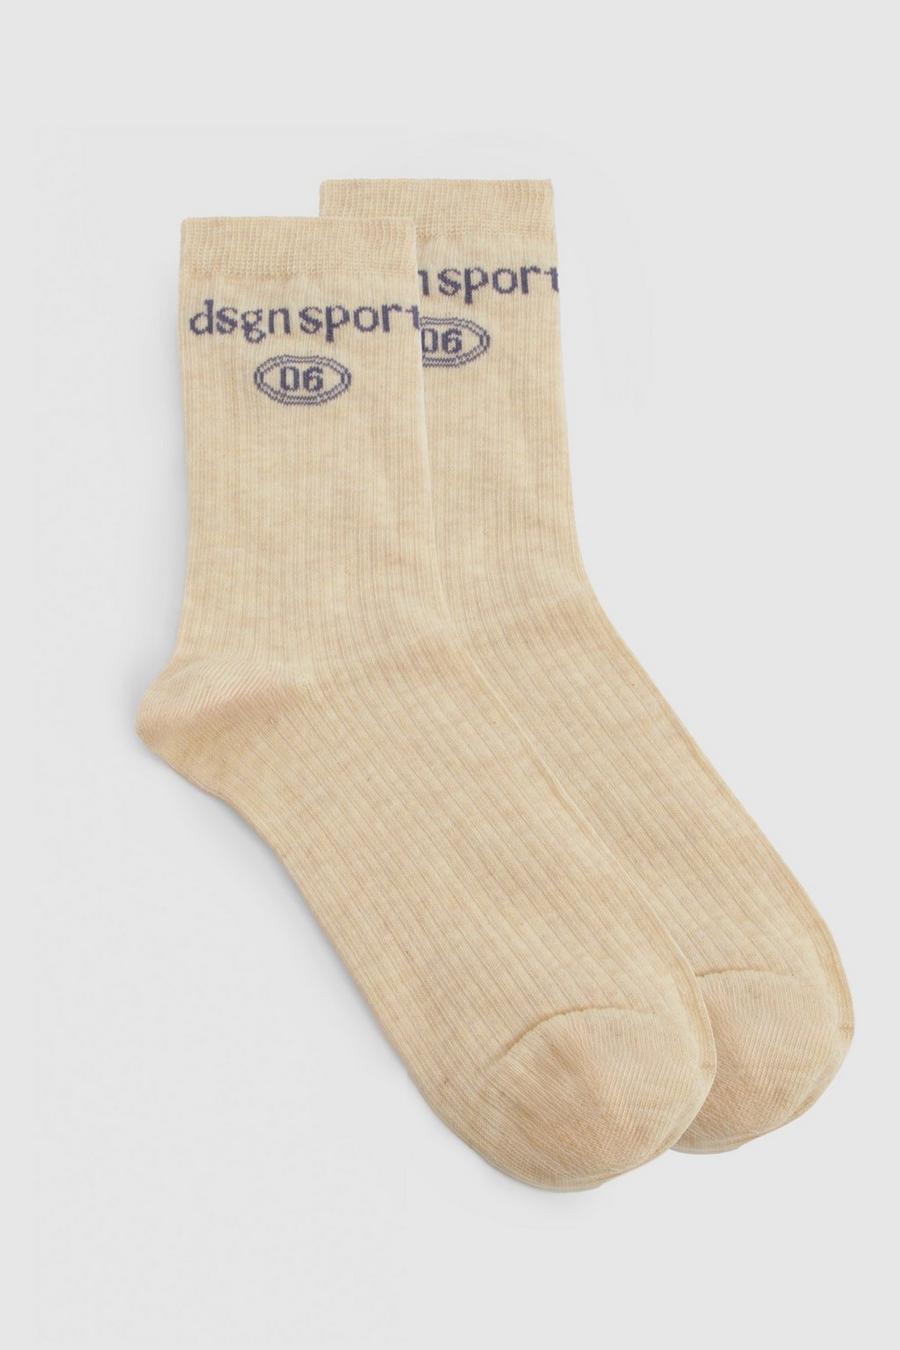 Oatmeal Dsgn Sport Single Sock 